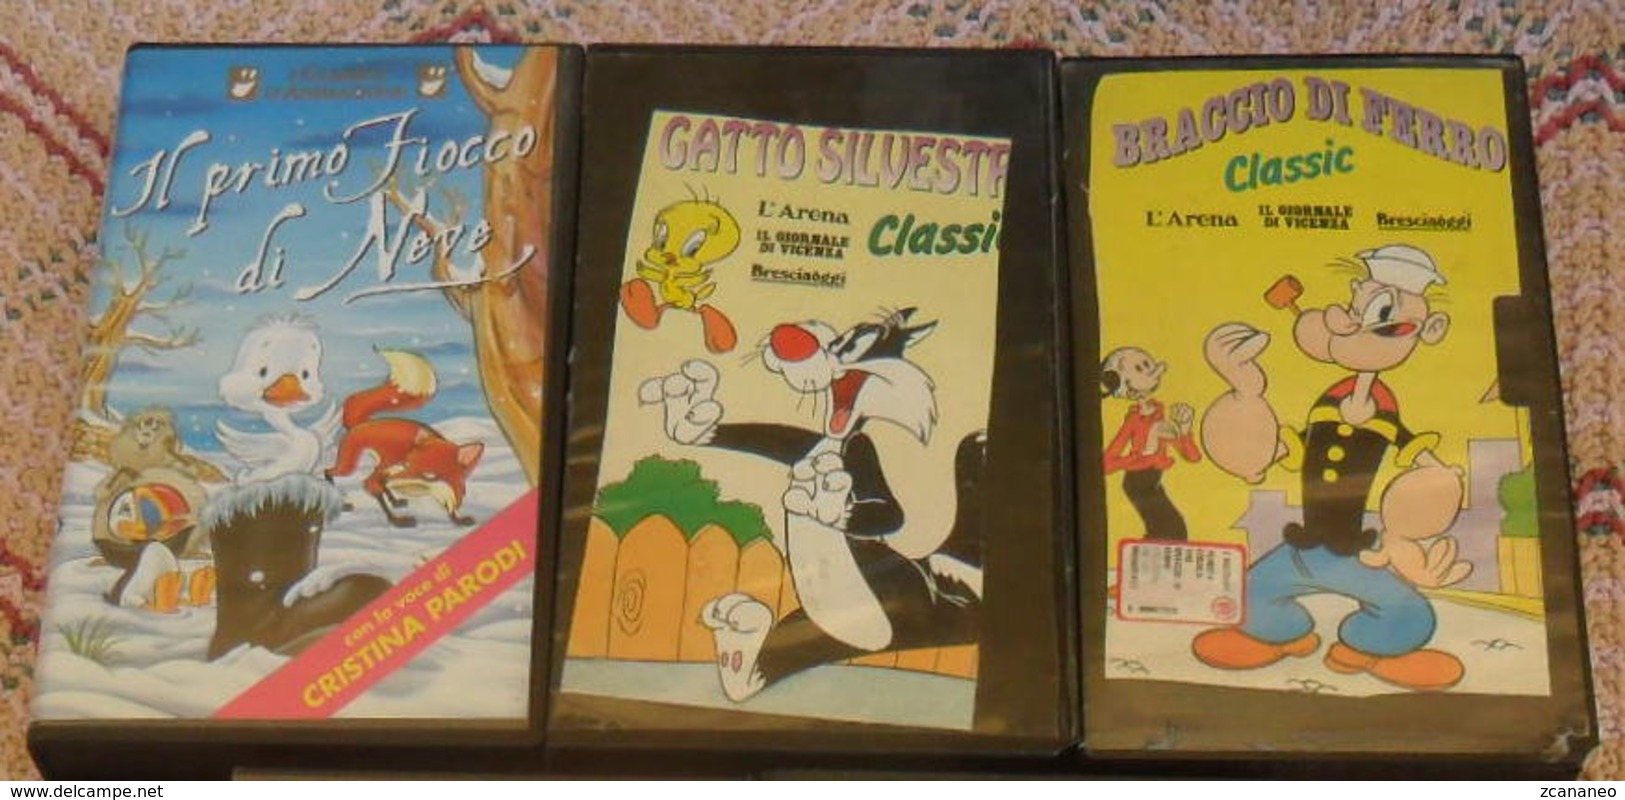 3 VHS CARTONI ANIMATI - BRACCIO DI FERRO - GATTO SILVESTRO - IL PRIMO FIOCCO DI NEVE - - Animatie